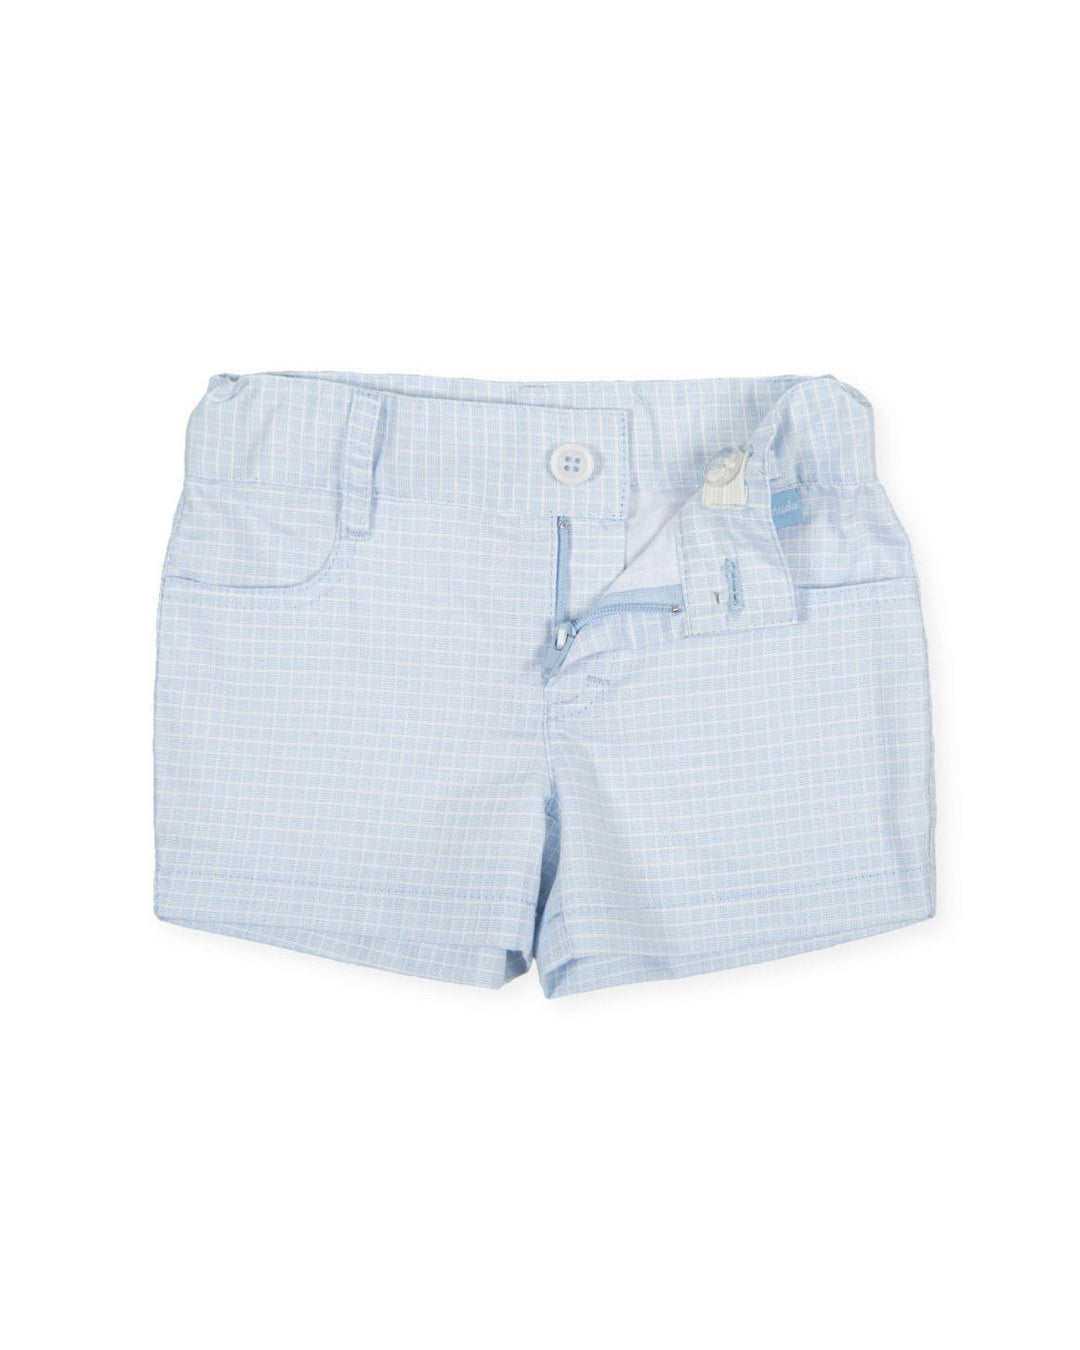 Tutto Piccolo "Saint" White Polo Shirt & Blue Shorts | Millie and John